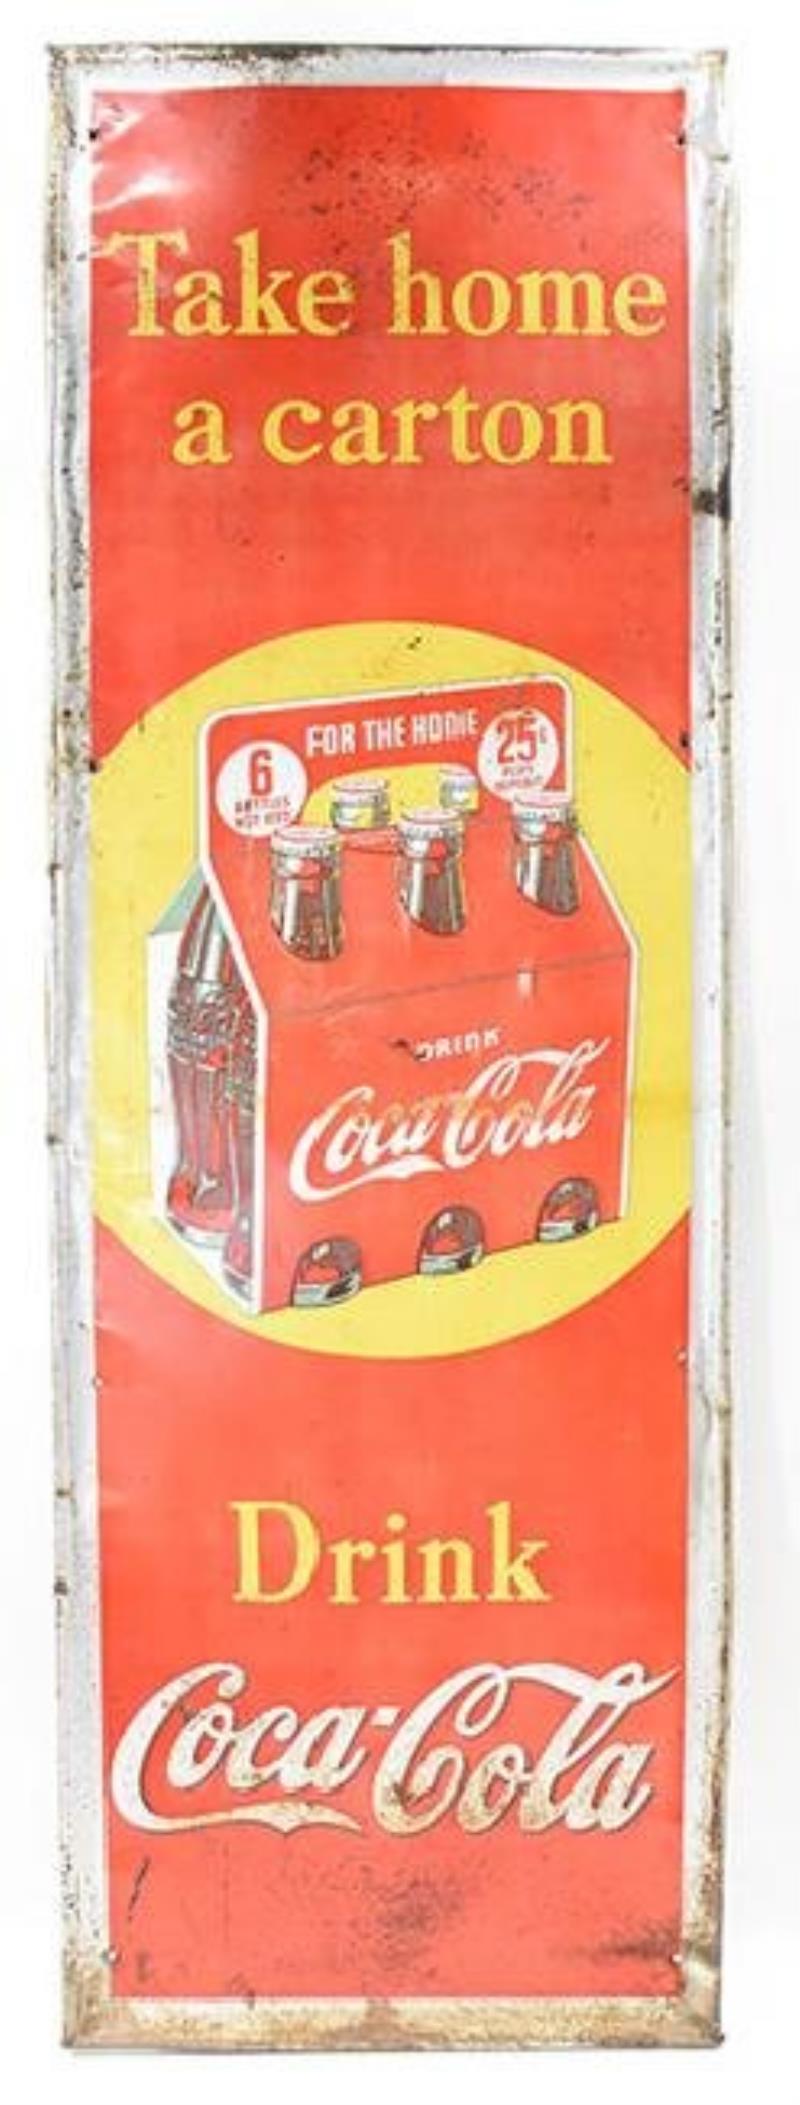 coca-cola take home a carton 25 cent tin sign